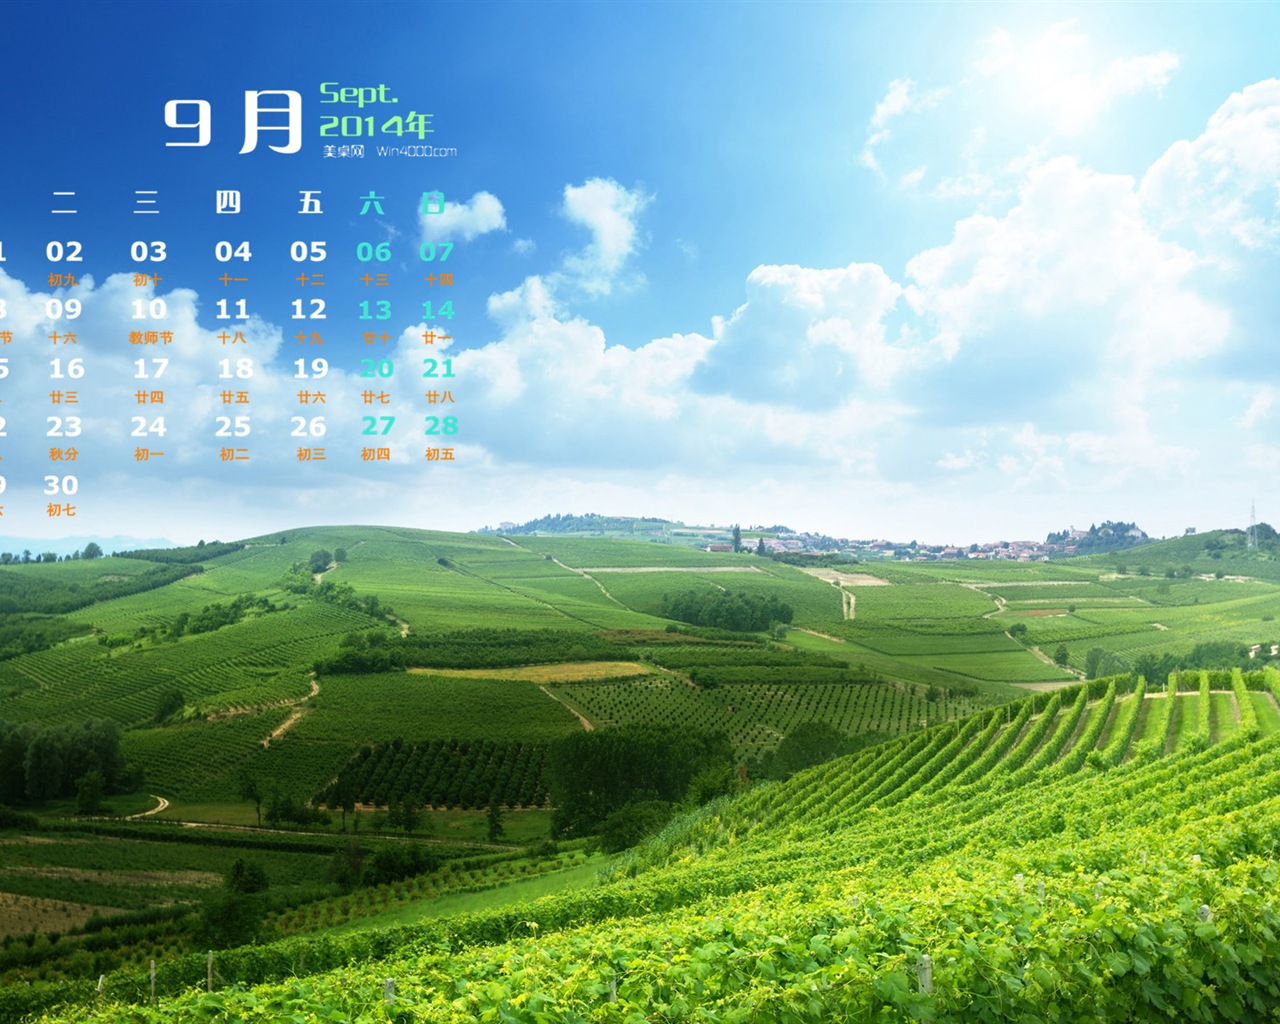 09 2014 wallpaper Calendario (2) #8 - 1280x1024